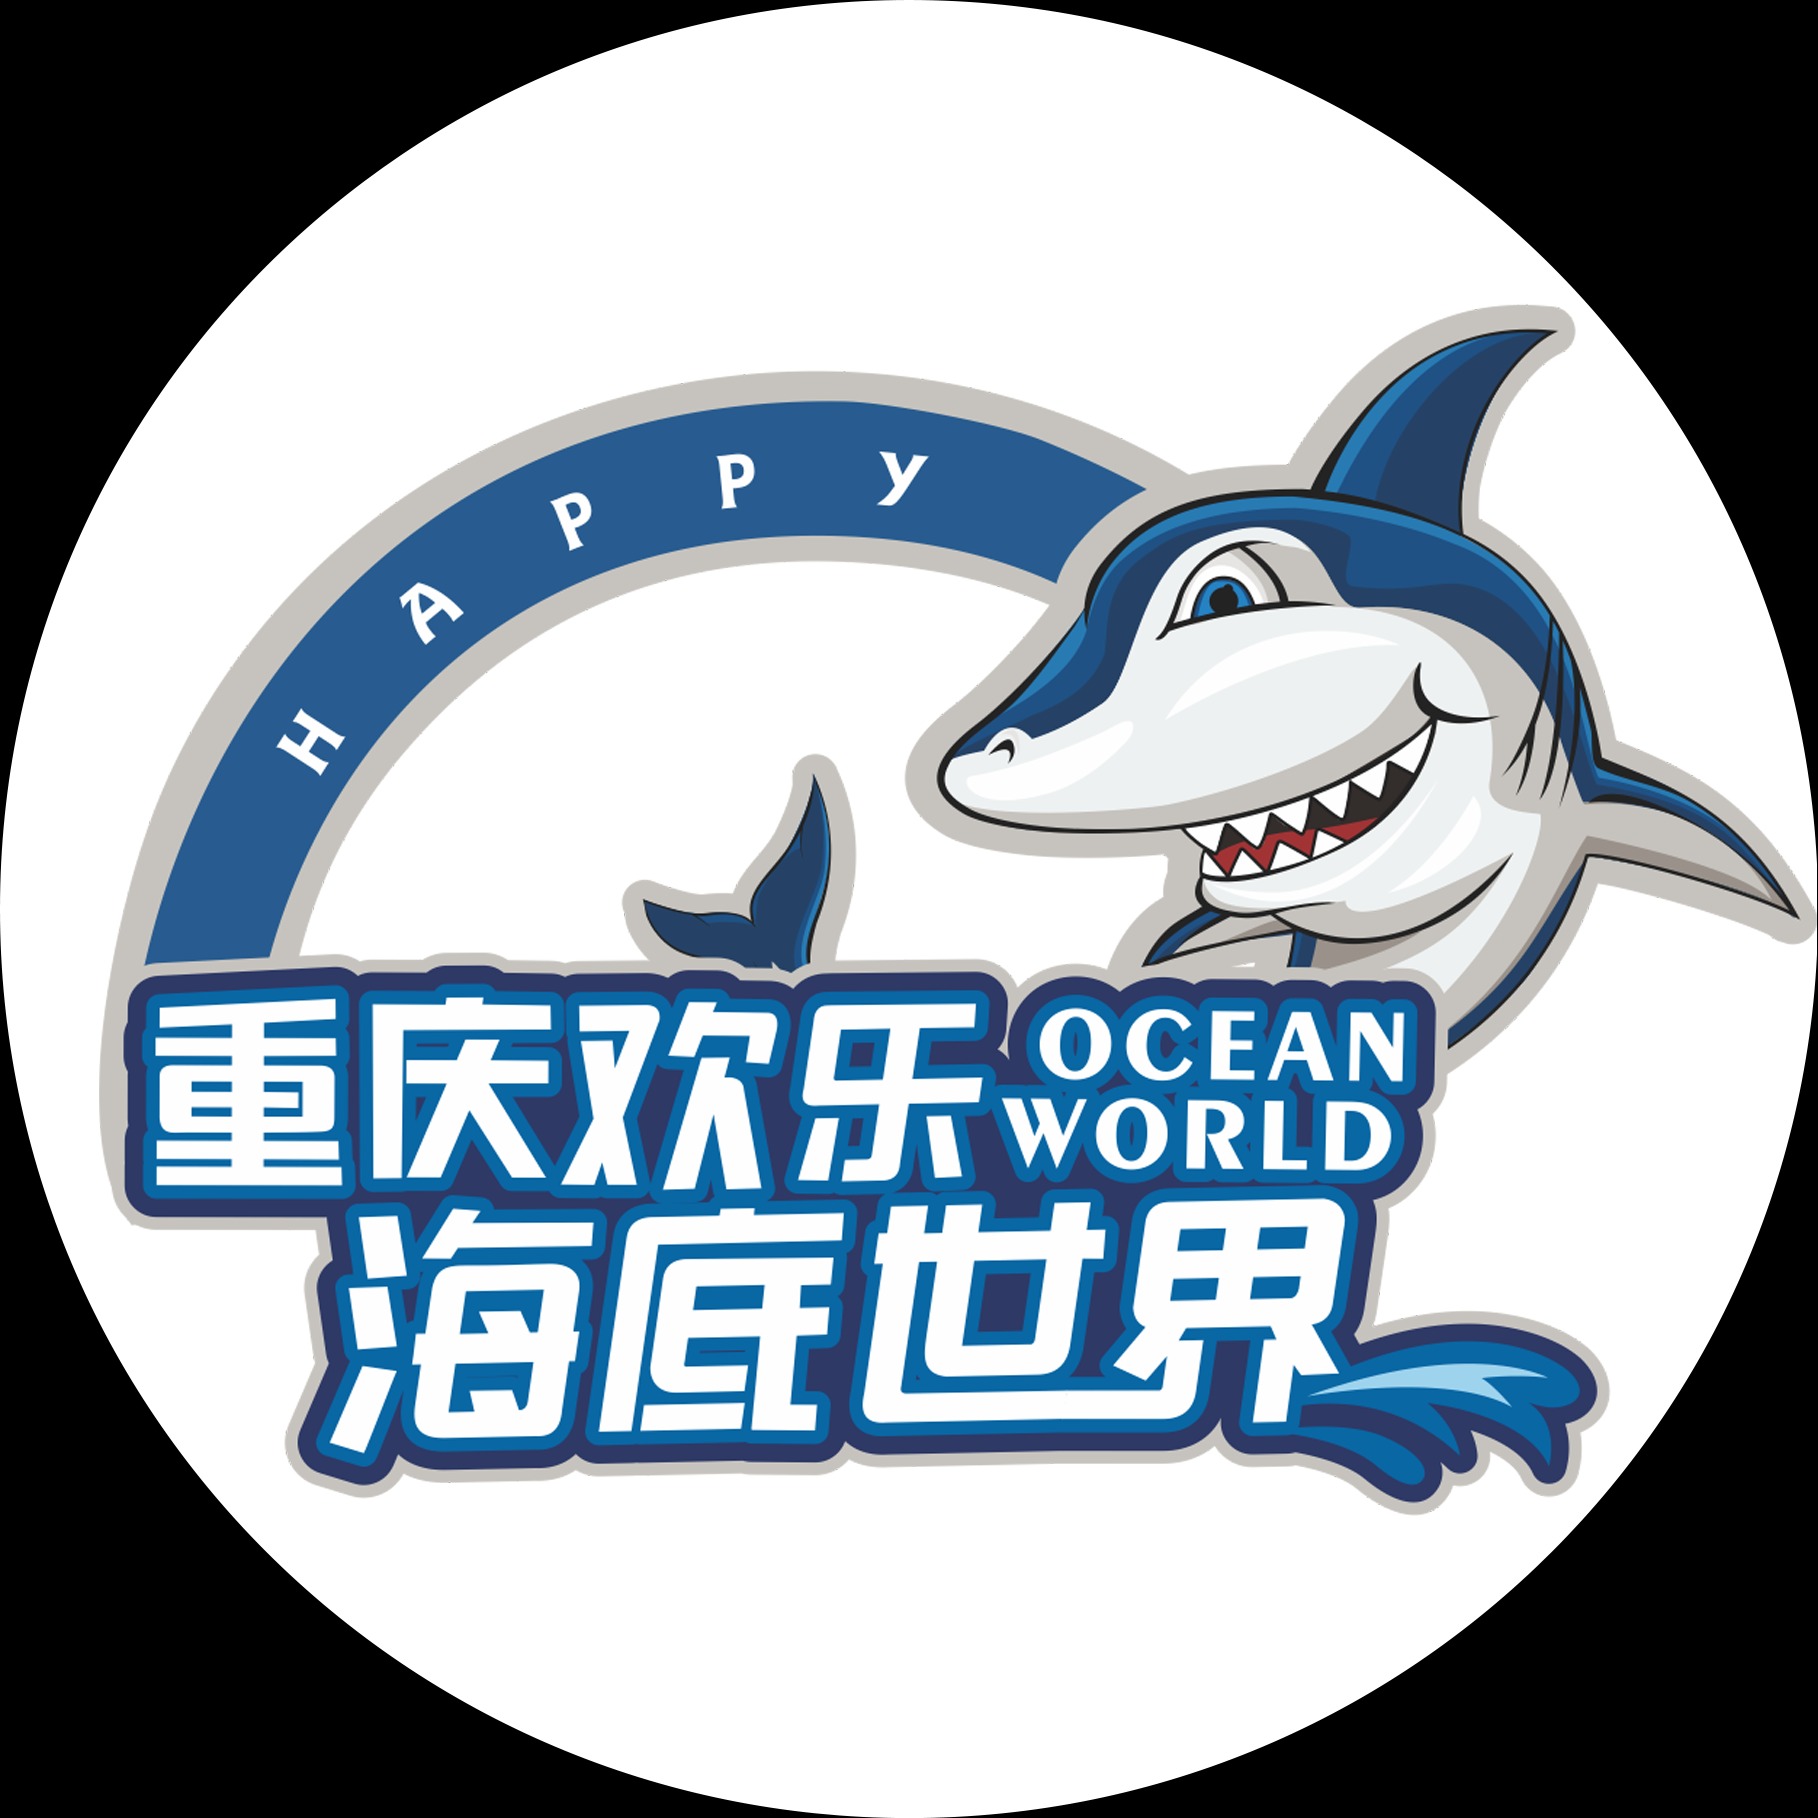 重庆欢乐海底世界旅游发展有限公司